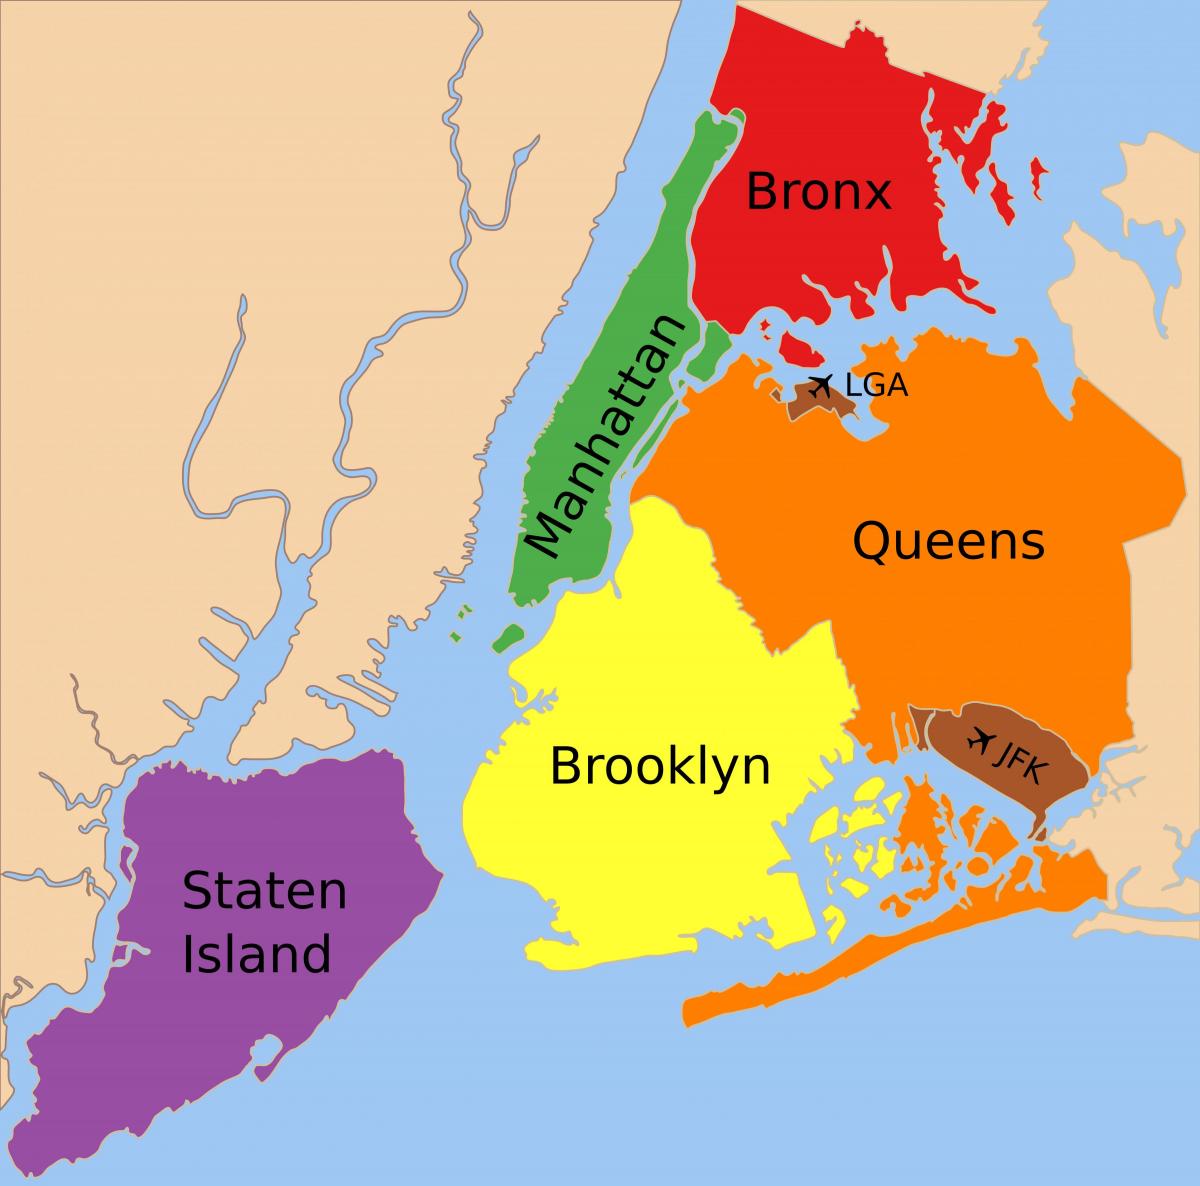 Mapa da Cidade de Nova York bairros - Mapa dos cinco distritos de Nova